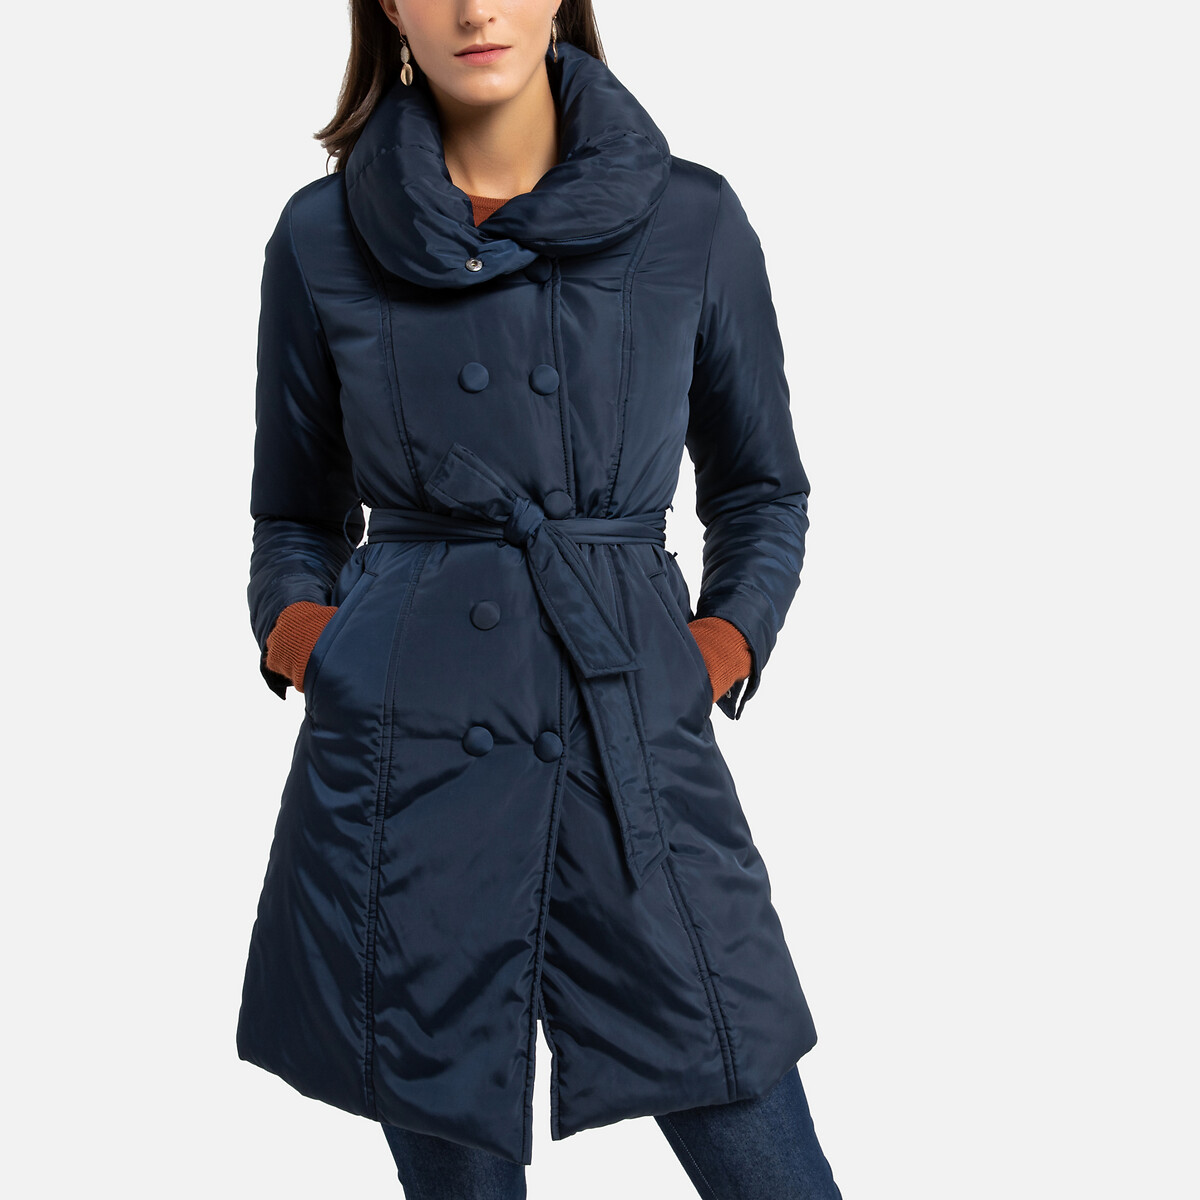 Куртка La Redoute Стеганая средней длины зимняя модель 44 (FR) - 50 (RUS) синий, размер 44 (FR) - 50 (RUS)